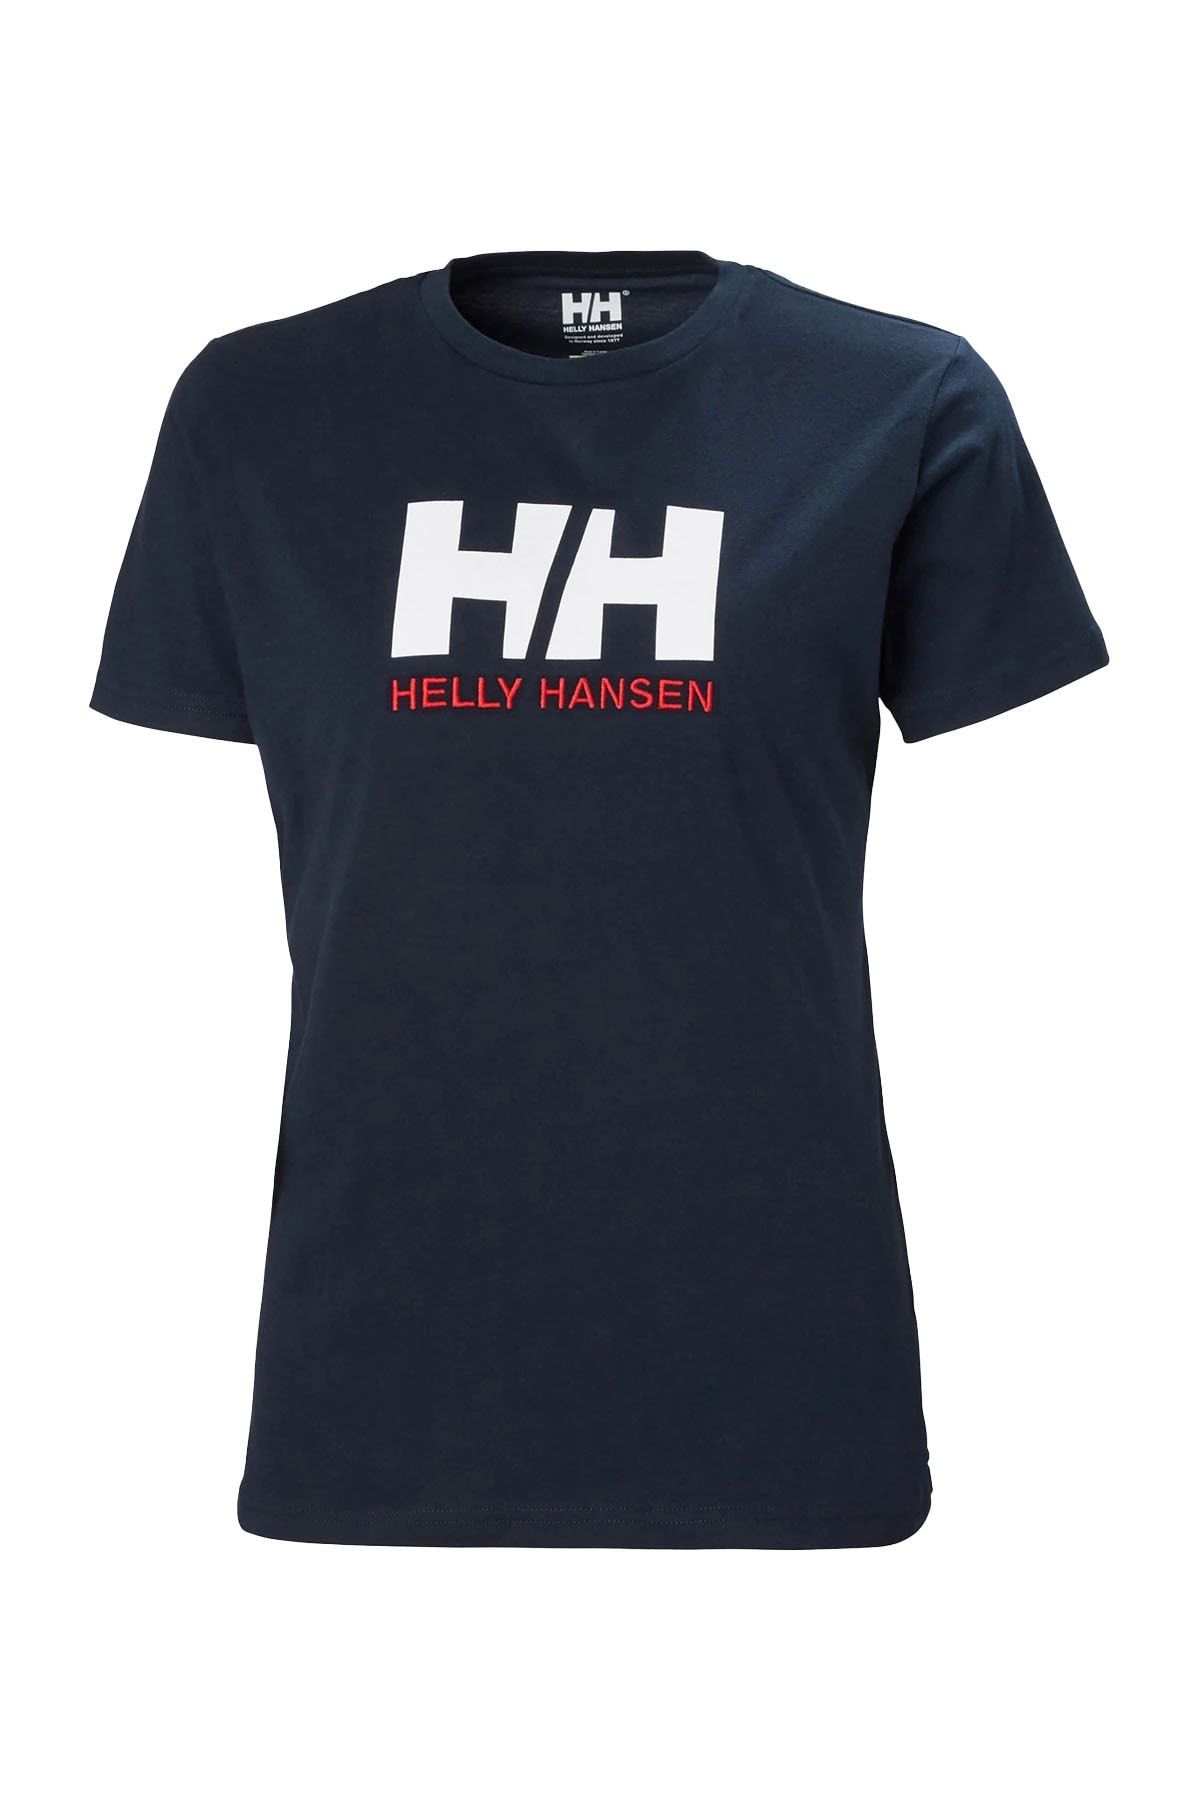 Helly Hansen Logo Kadın T-shirt - 34112